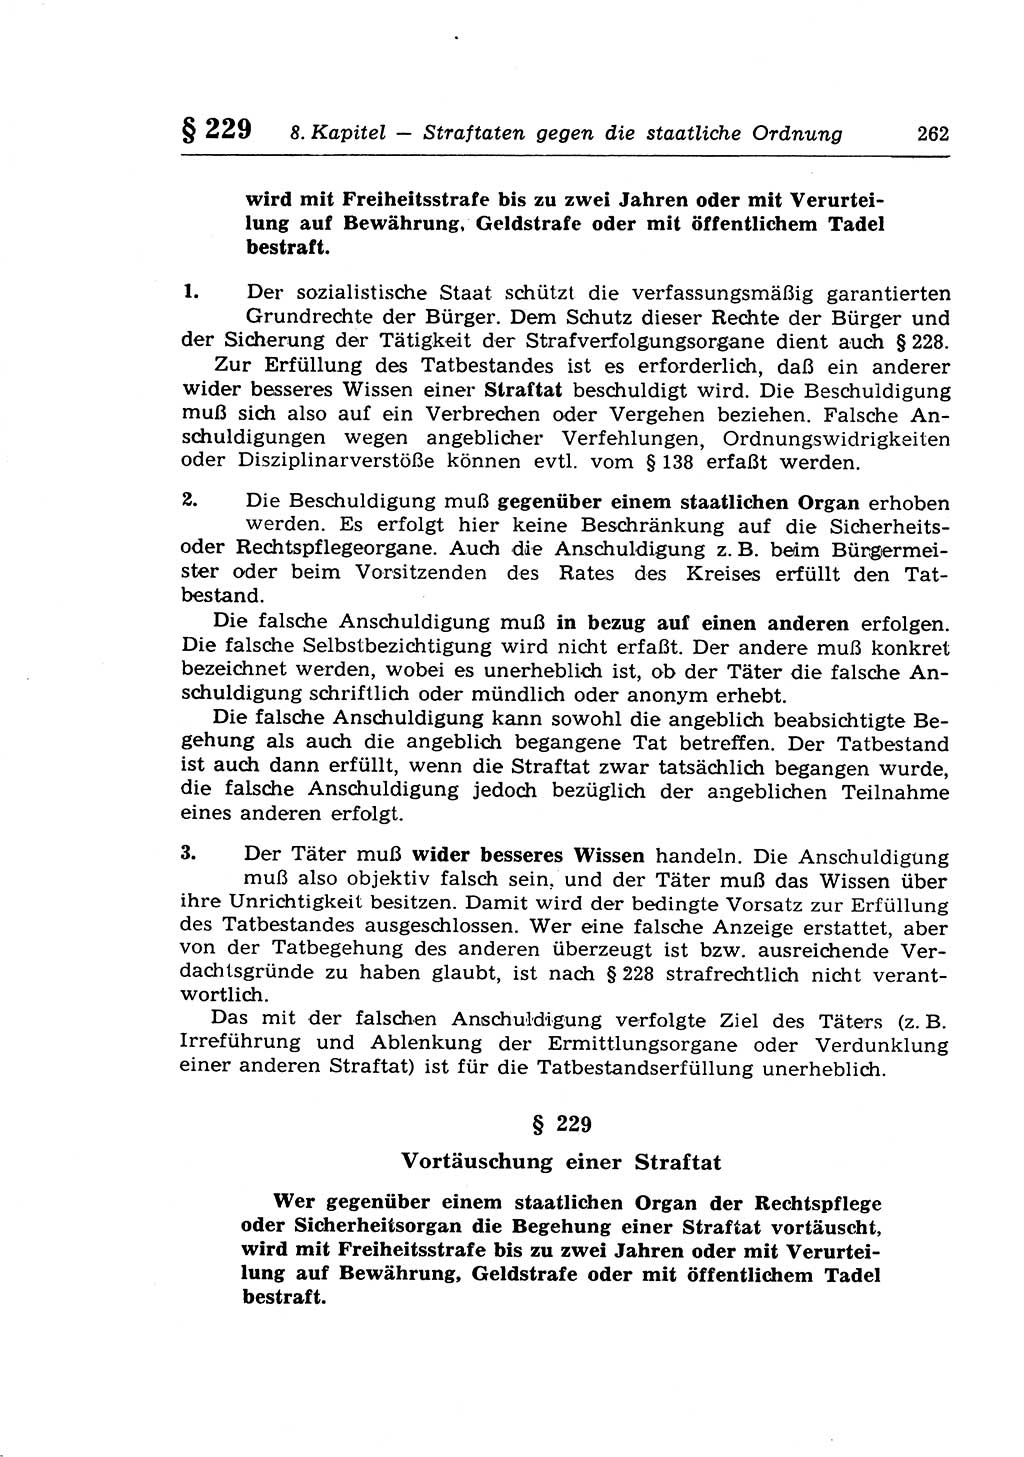 Strafrecht der Deutschen Demokratischen Republik (DDR), Lehrkommentar zum Strafgesetzbuch (StGB), Besonderer Teil 1970, Seite 262 (Strafr. DDR Lehrkomm. StGB BT 1970, S. 262)